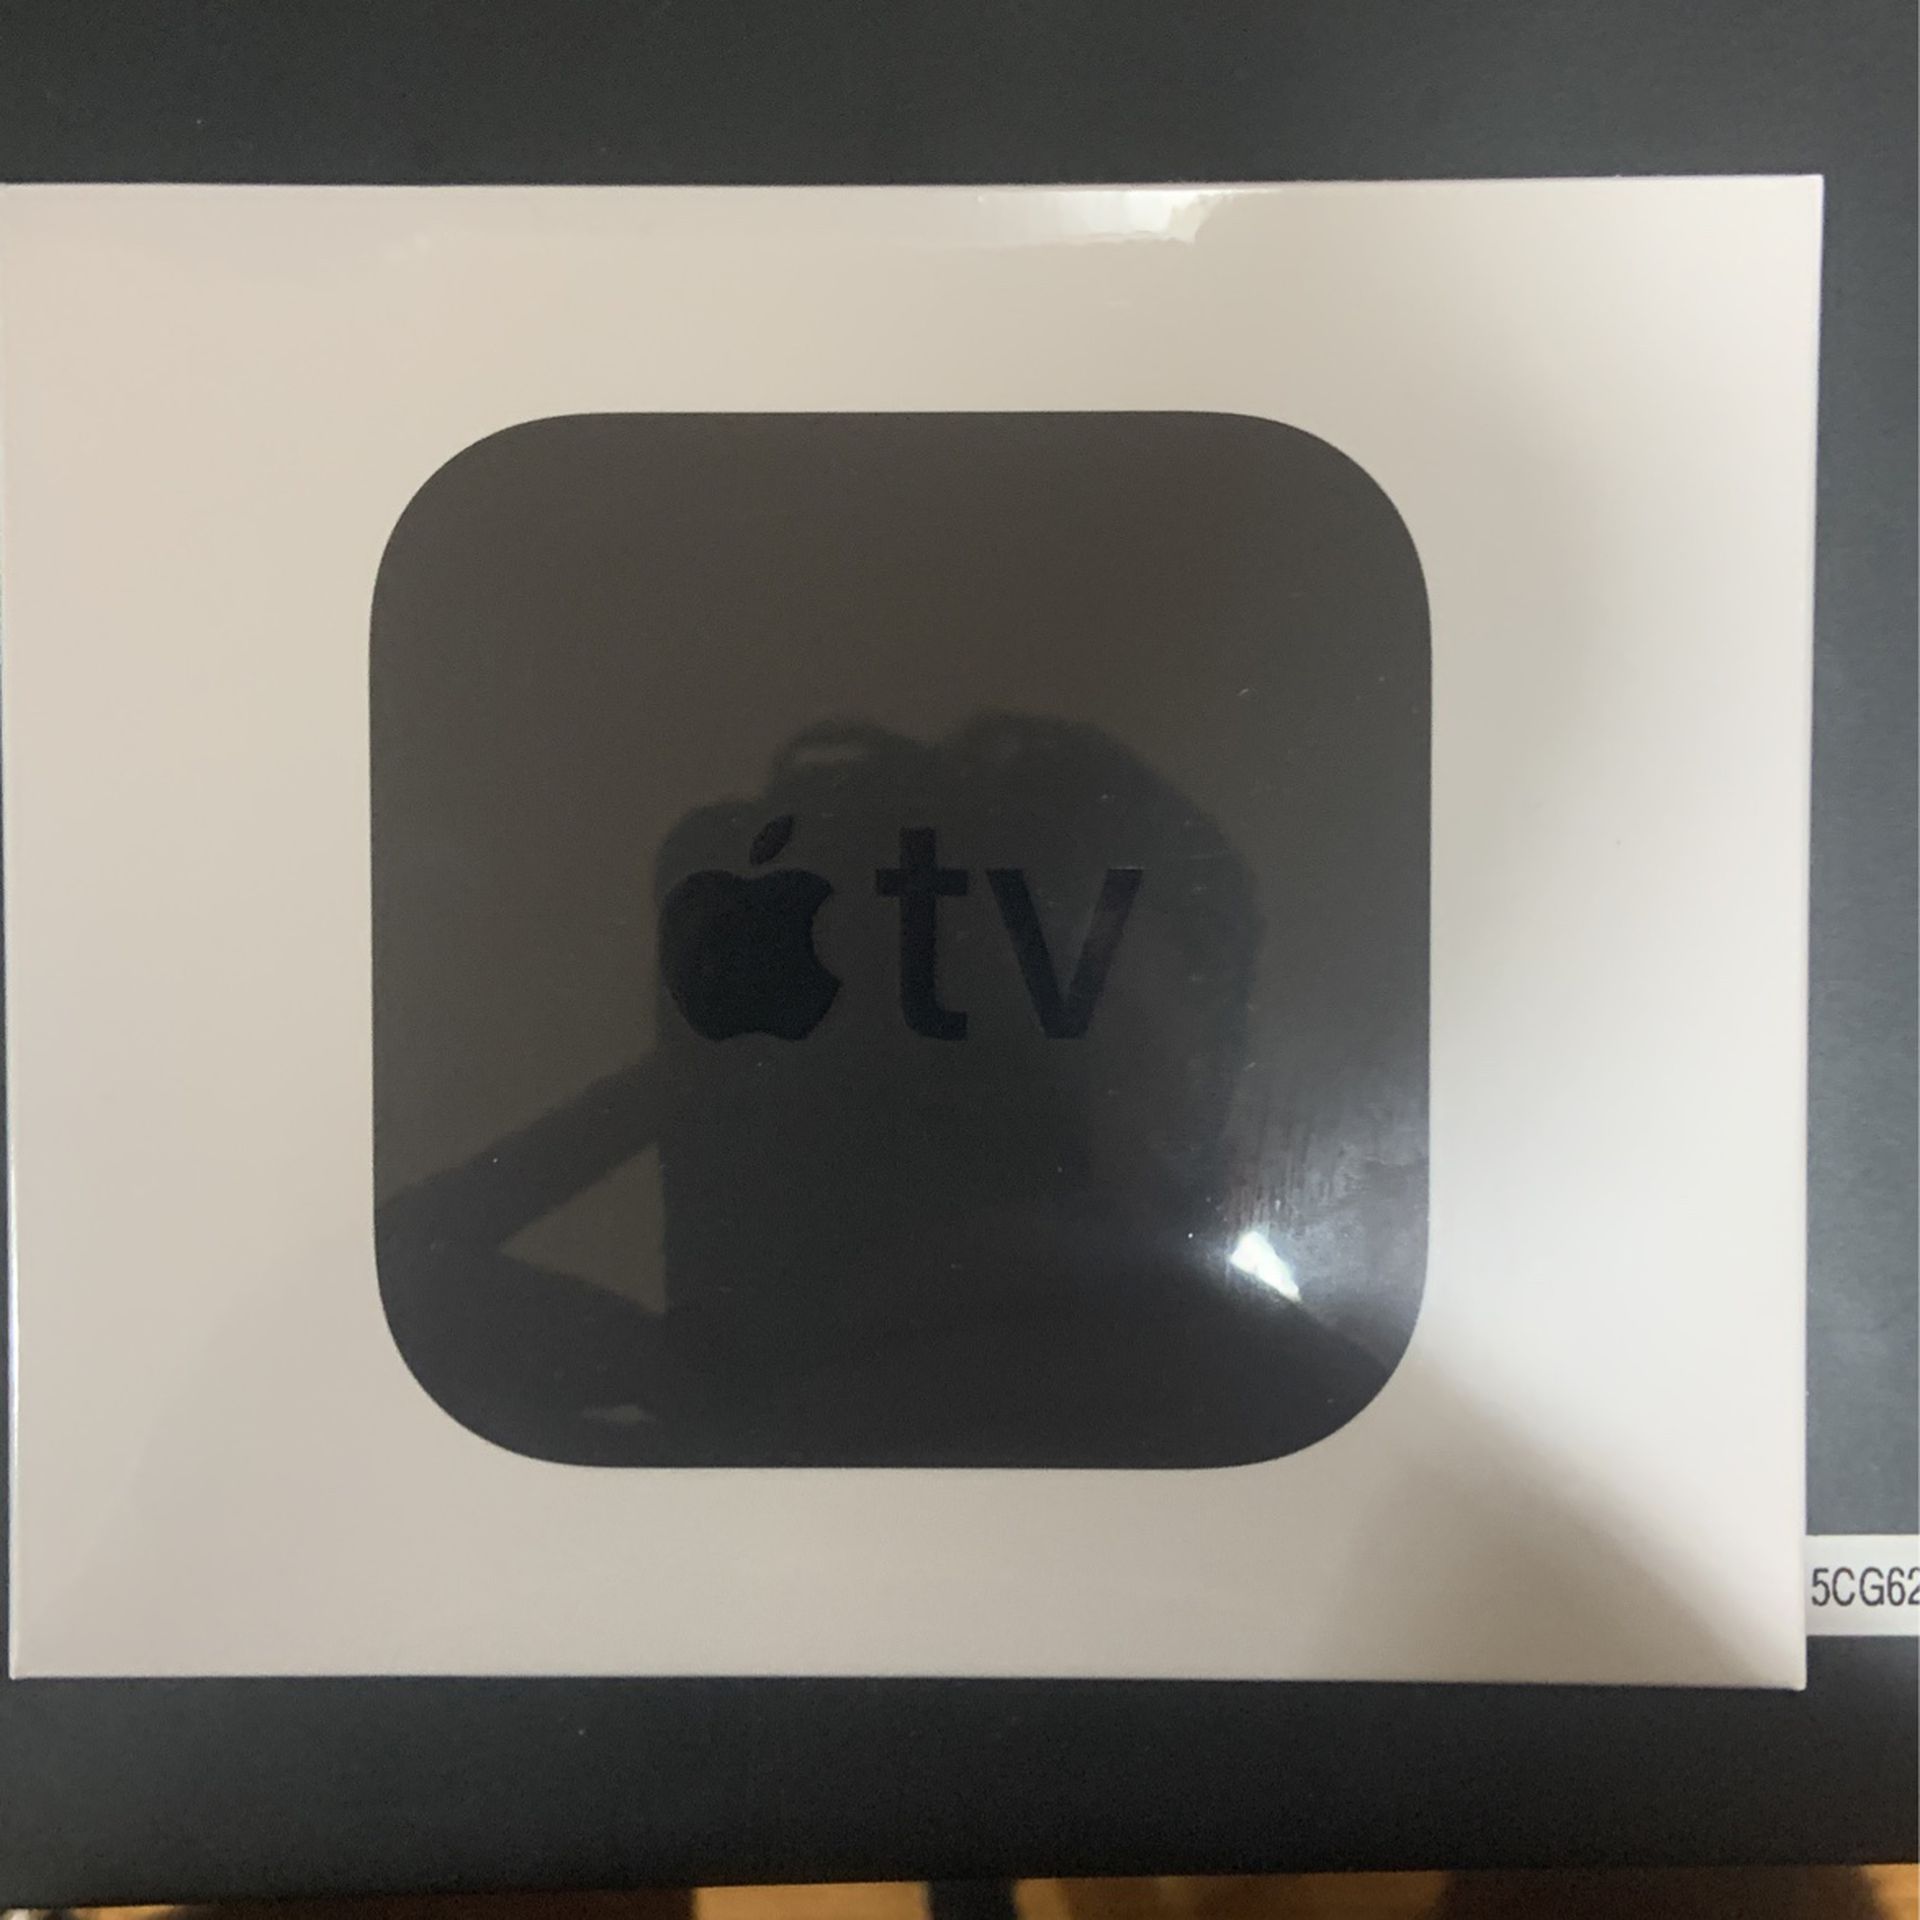 Apple TV HD 32GB 1080p Brand New Still In Plastic